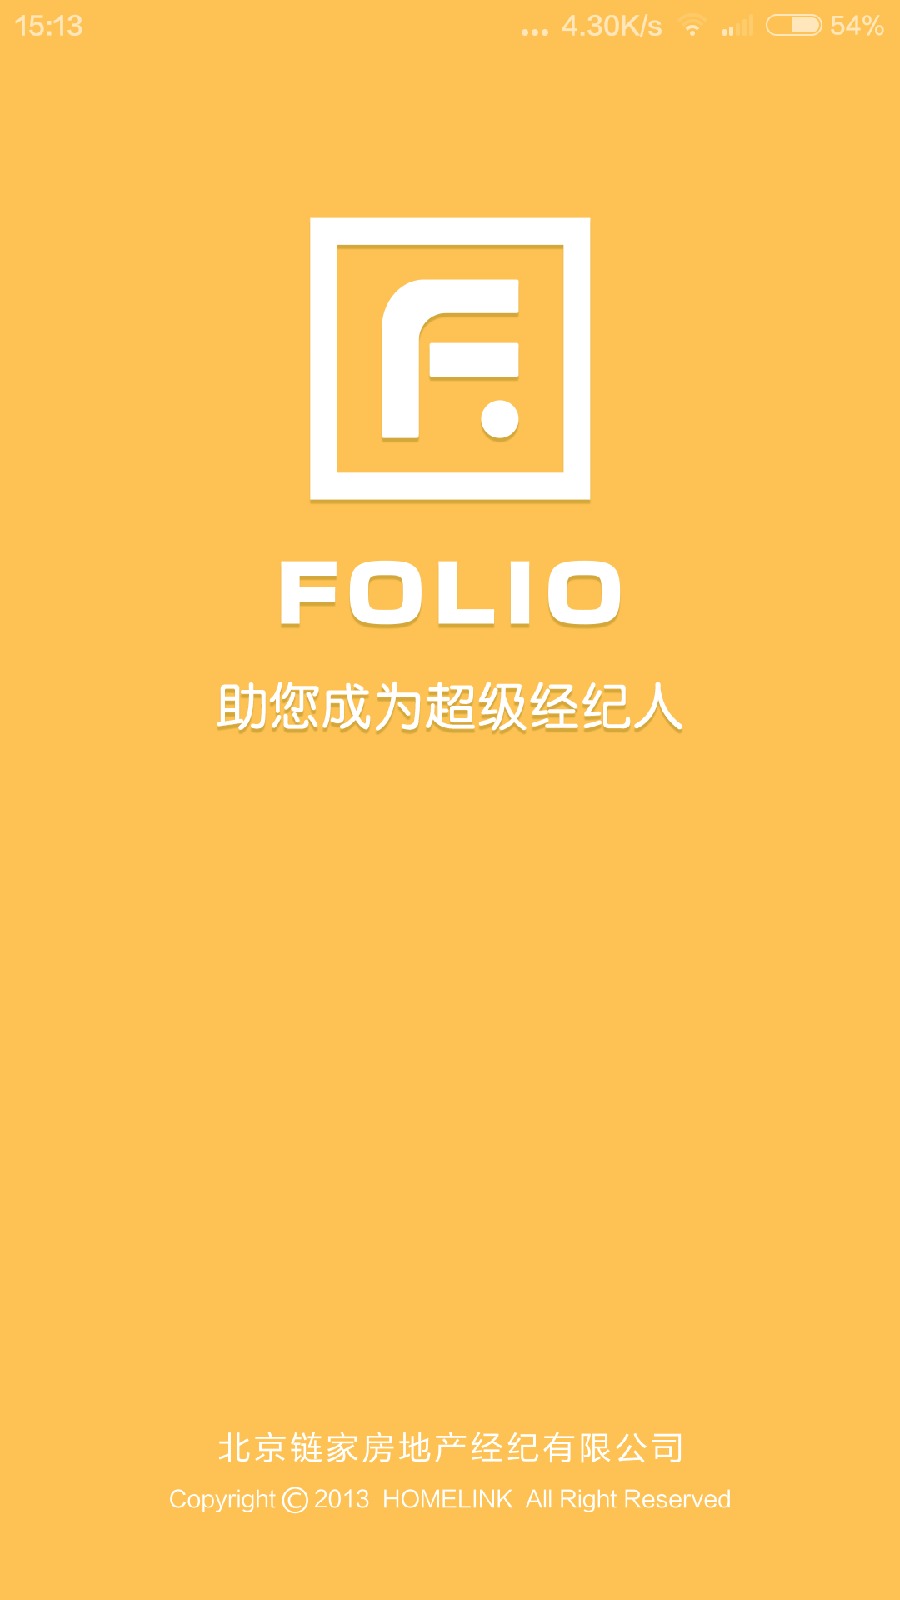 链家folio客户端 v1.2.3 安卓版0